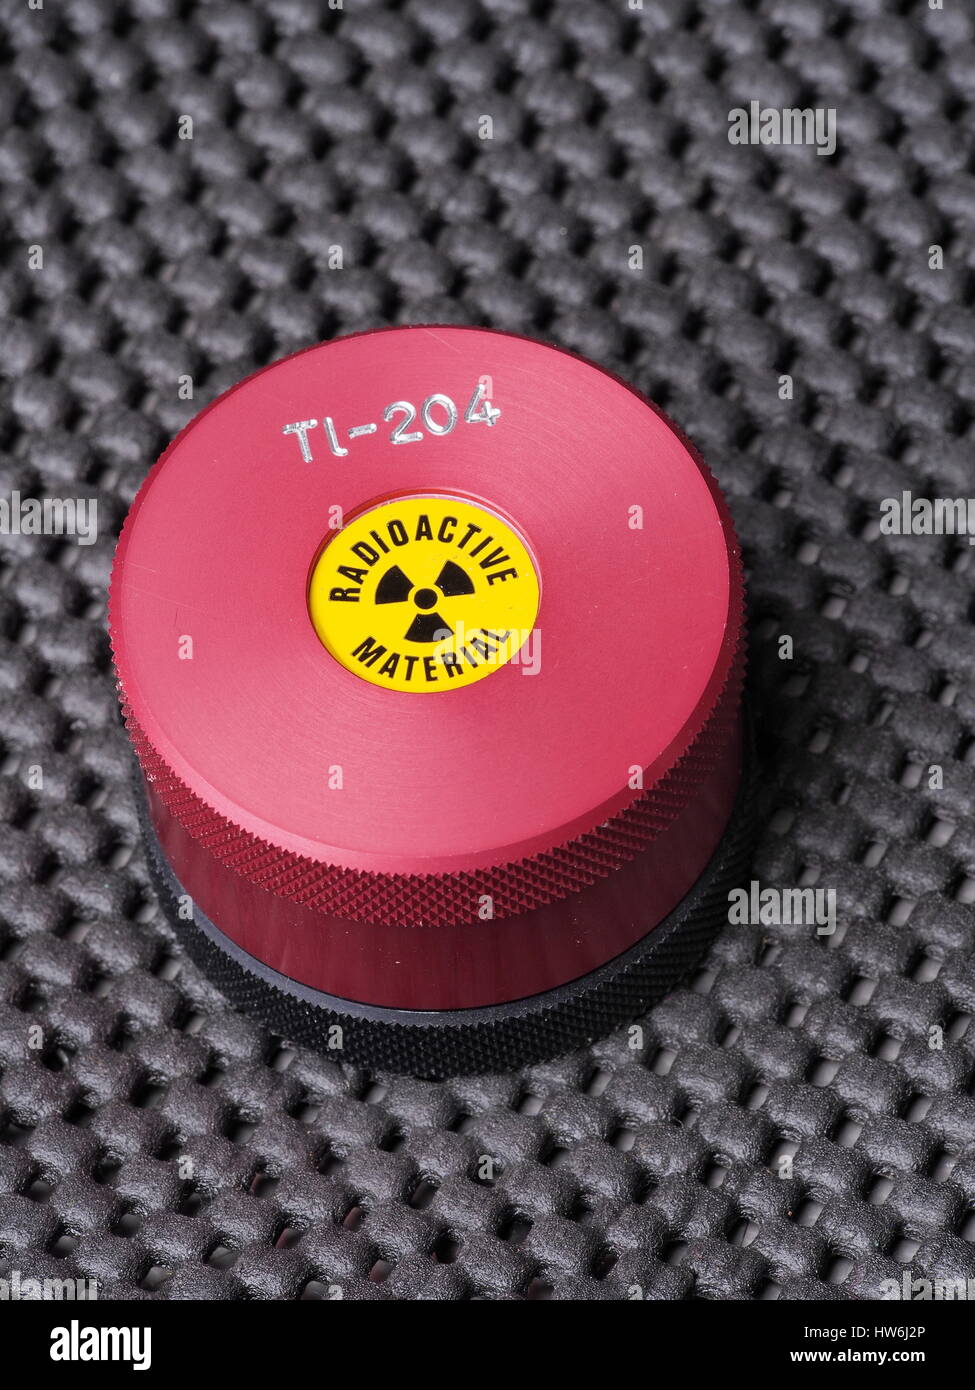 Specialista di contenitore con adesivo di avvertenza e di incisione contenente isotopo radioattivo tallio-204, Melbourne 2015 Foto Stock